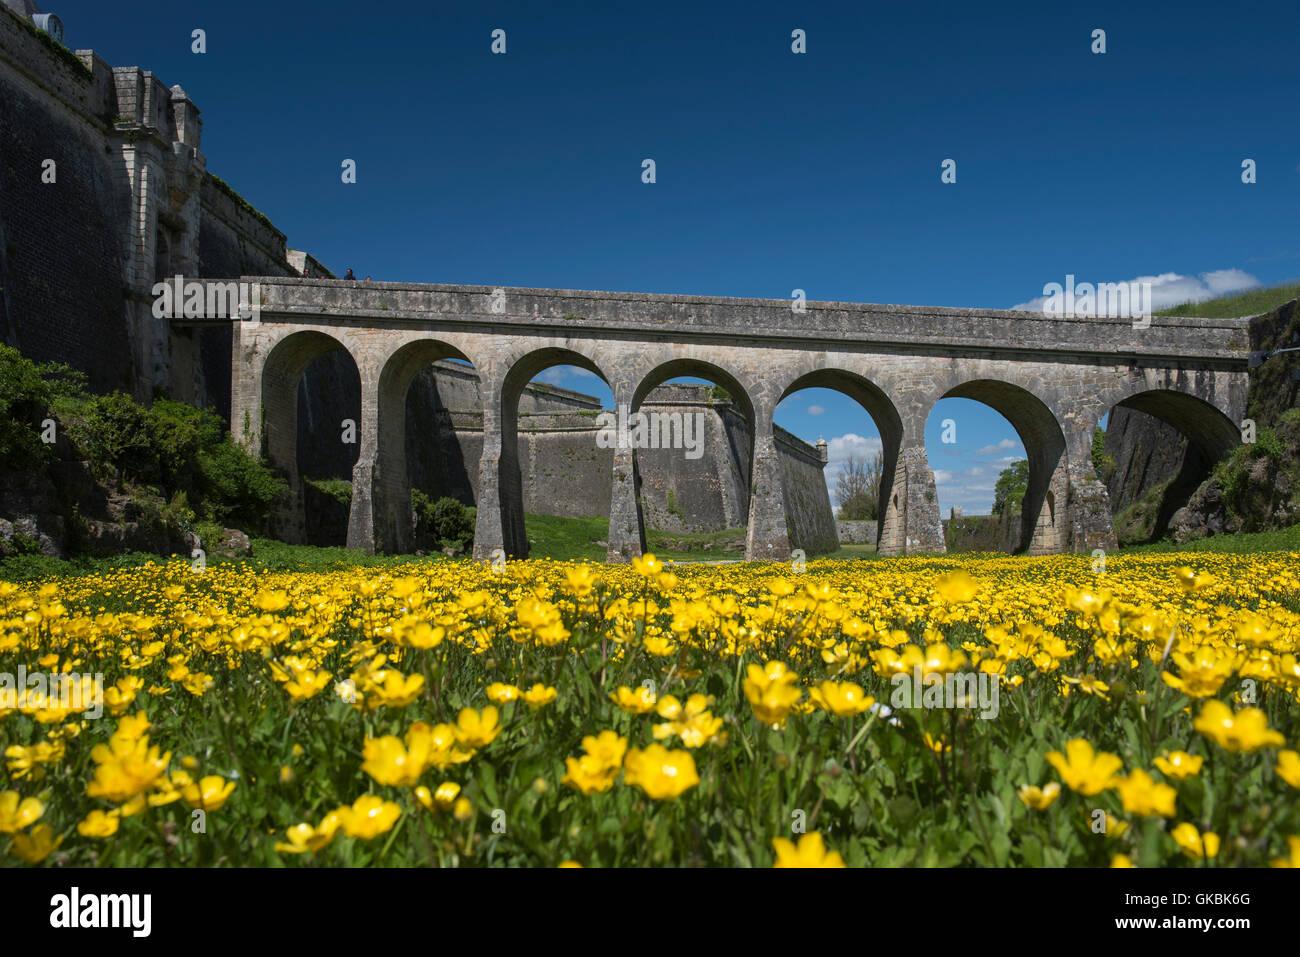 Entrée de la Citadelle de Blaye, site du patrimoine mondial de l'UNESCO sur la rive de l'estuaire de la Gironde, France Banque D'Images